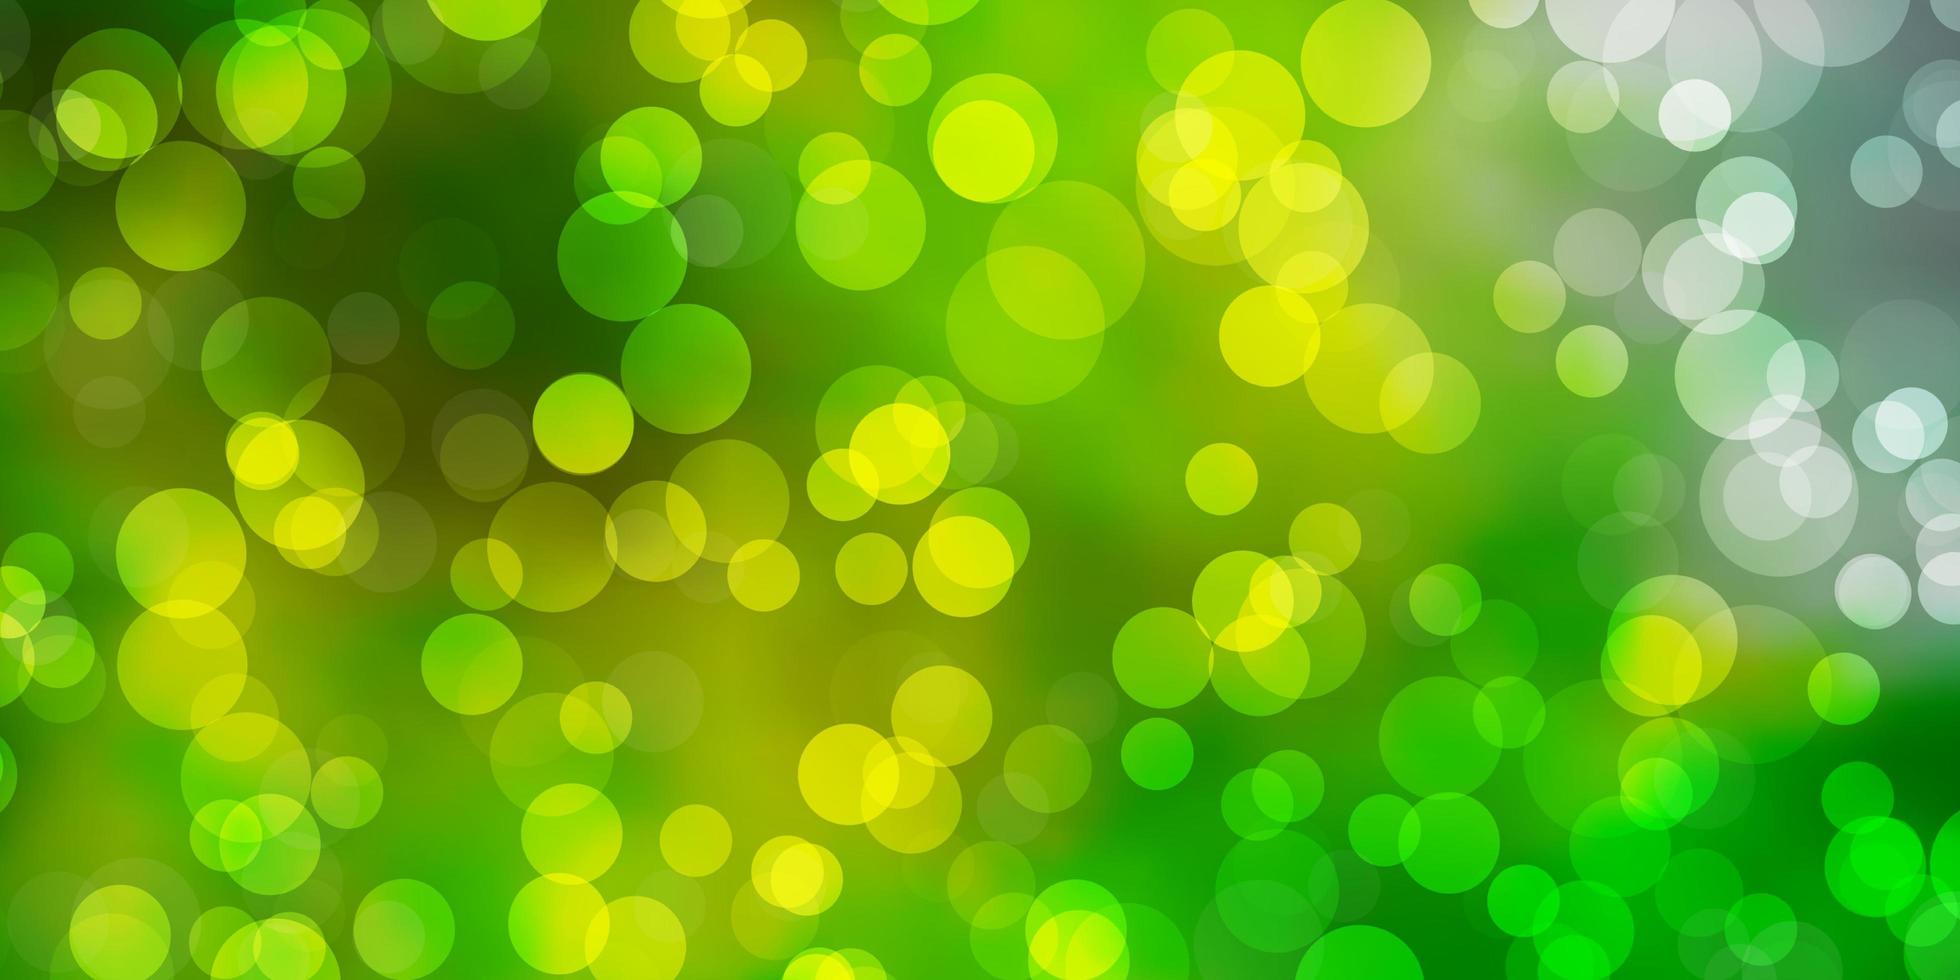 ljusgrön, gul vektorlayout med cirkelformer. färgglad illustration med lutande prickar i naturstil. mönster för företagsannonser. vektor